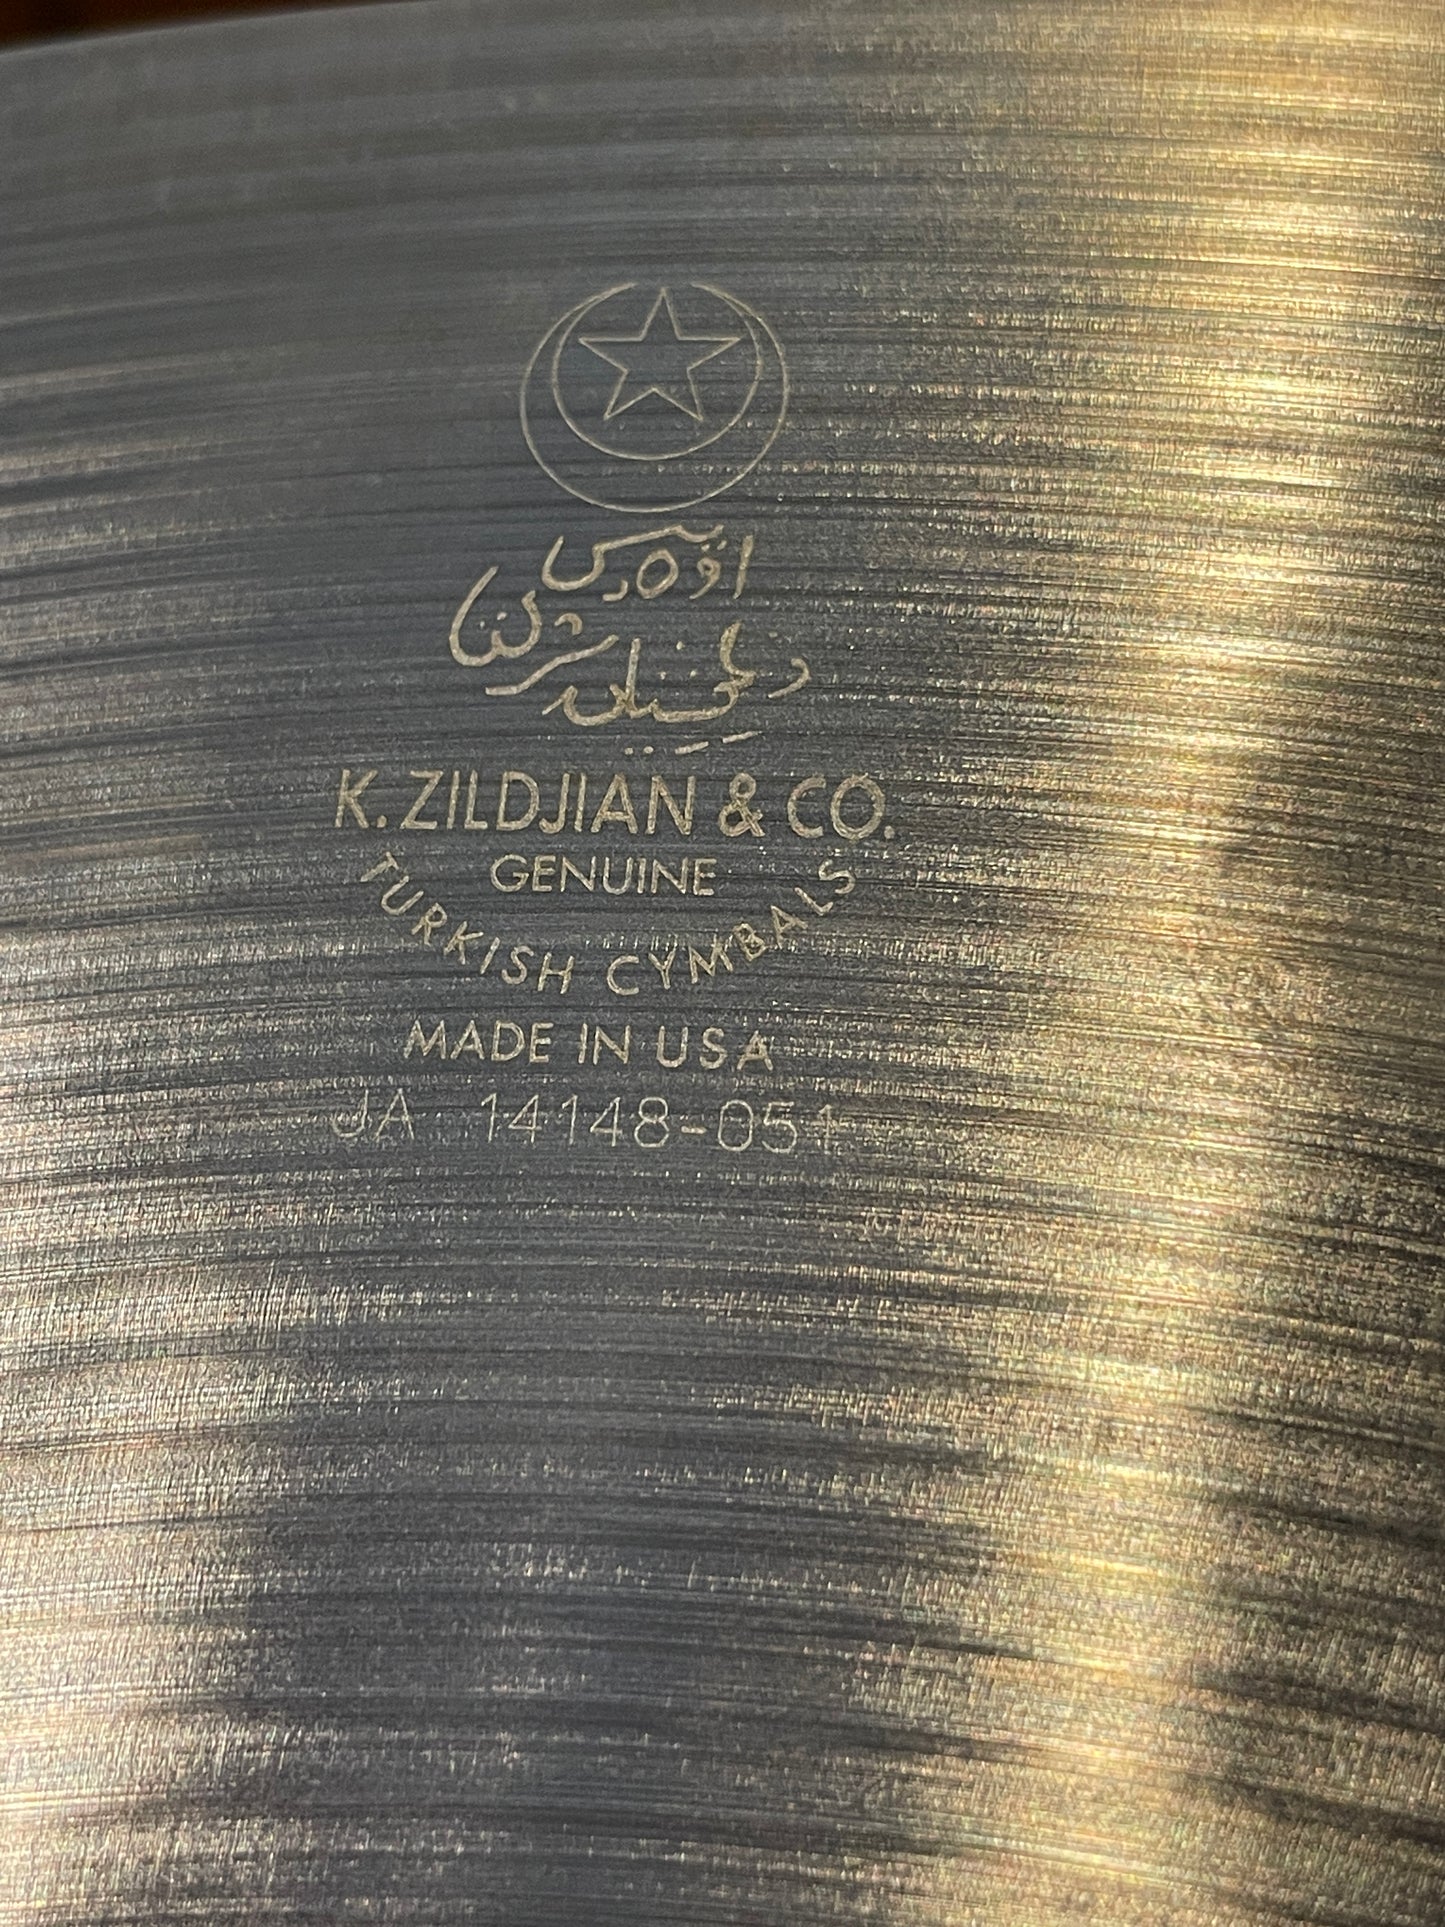 16" Zildjian K Dark Crash Medium Thin Cymbal 1234g